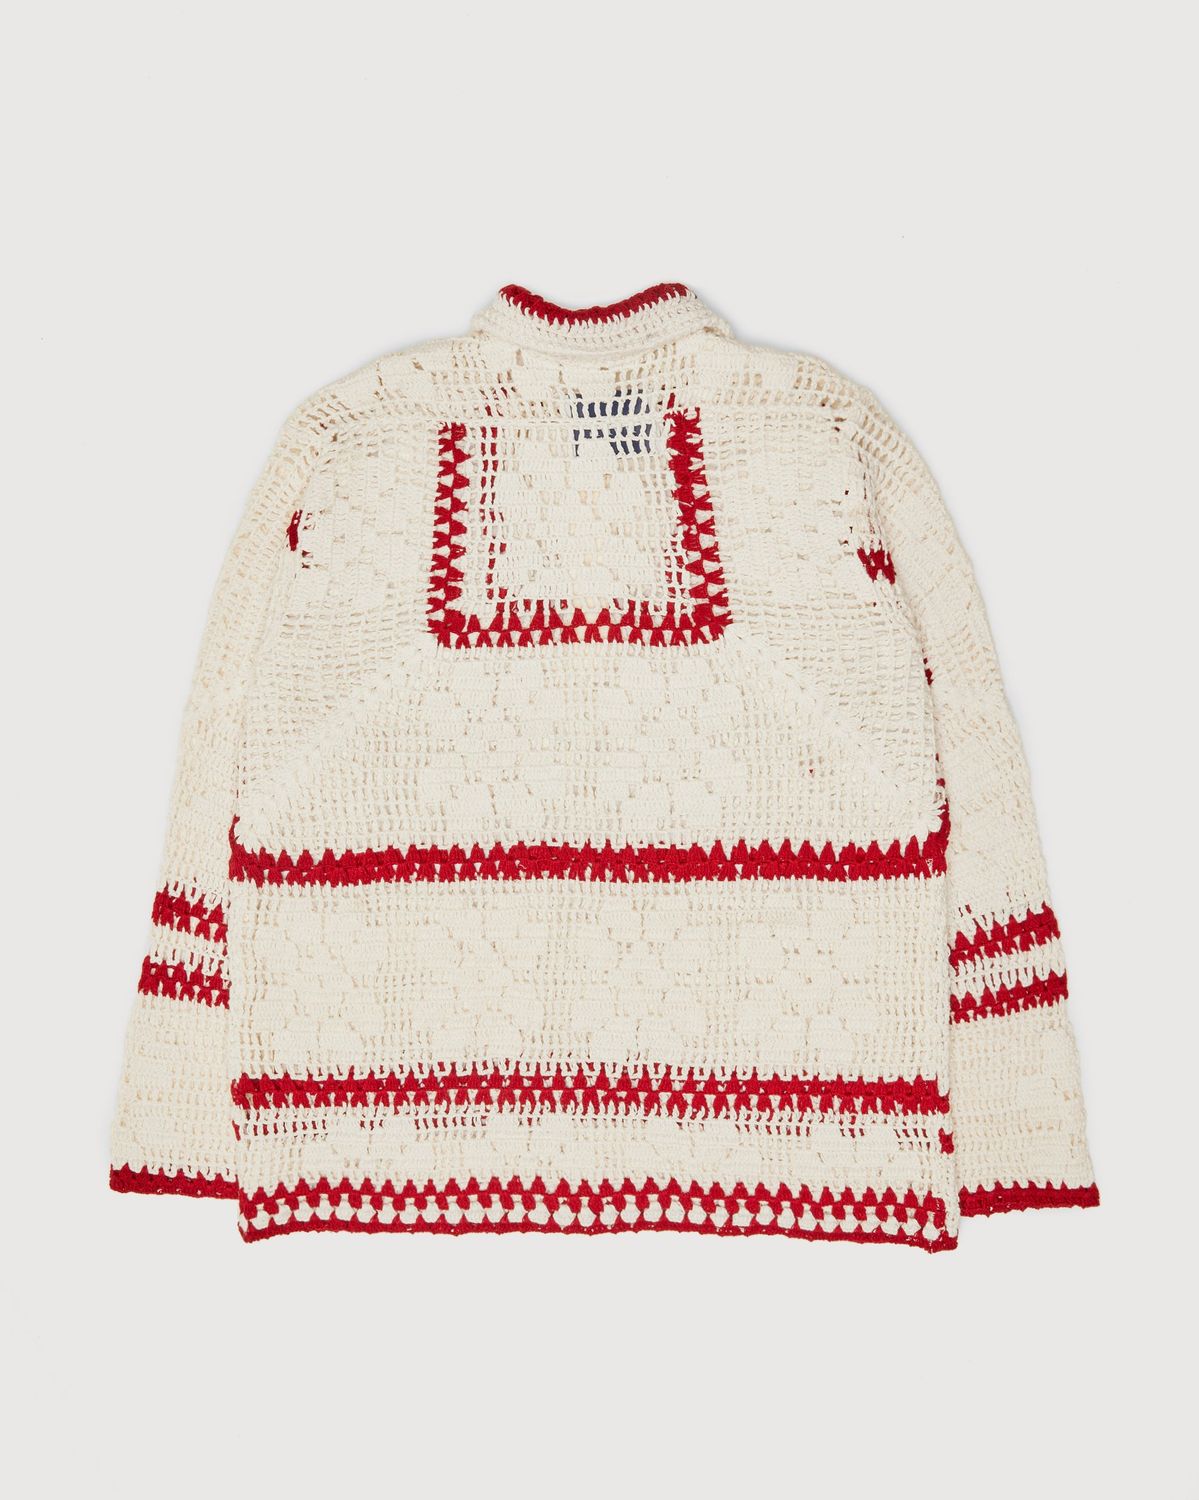 Bode – Mockneck Crochet Pullover White Red - Crewnecks - Beige - Image 2